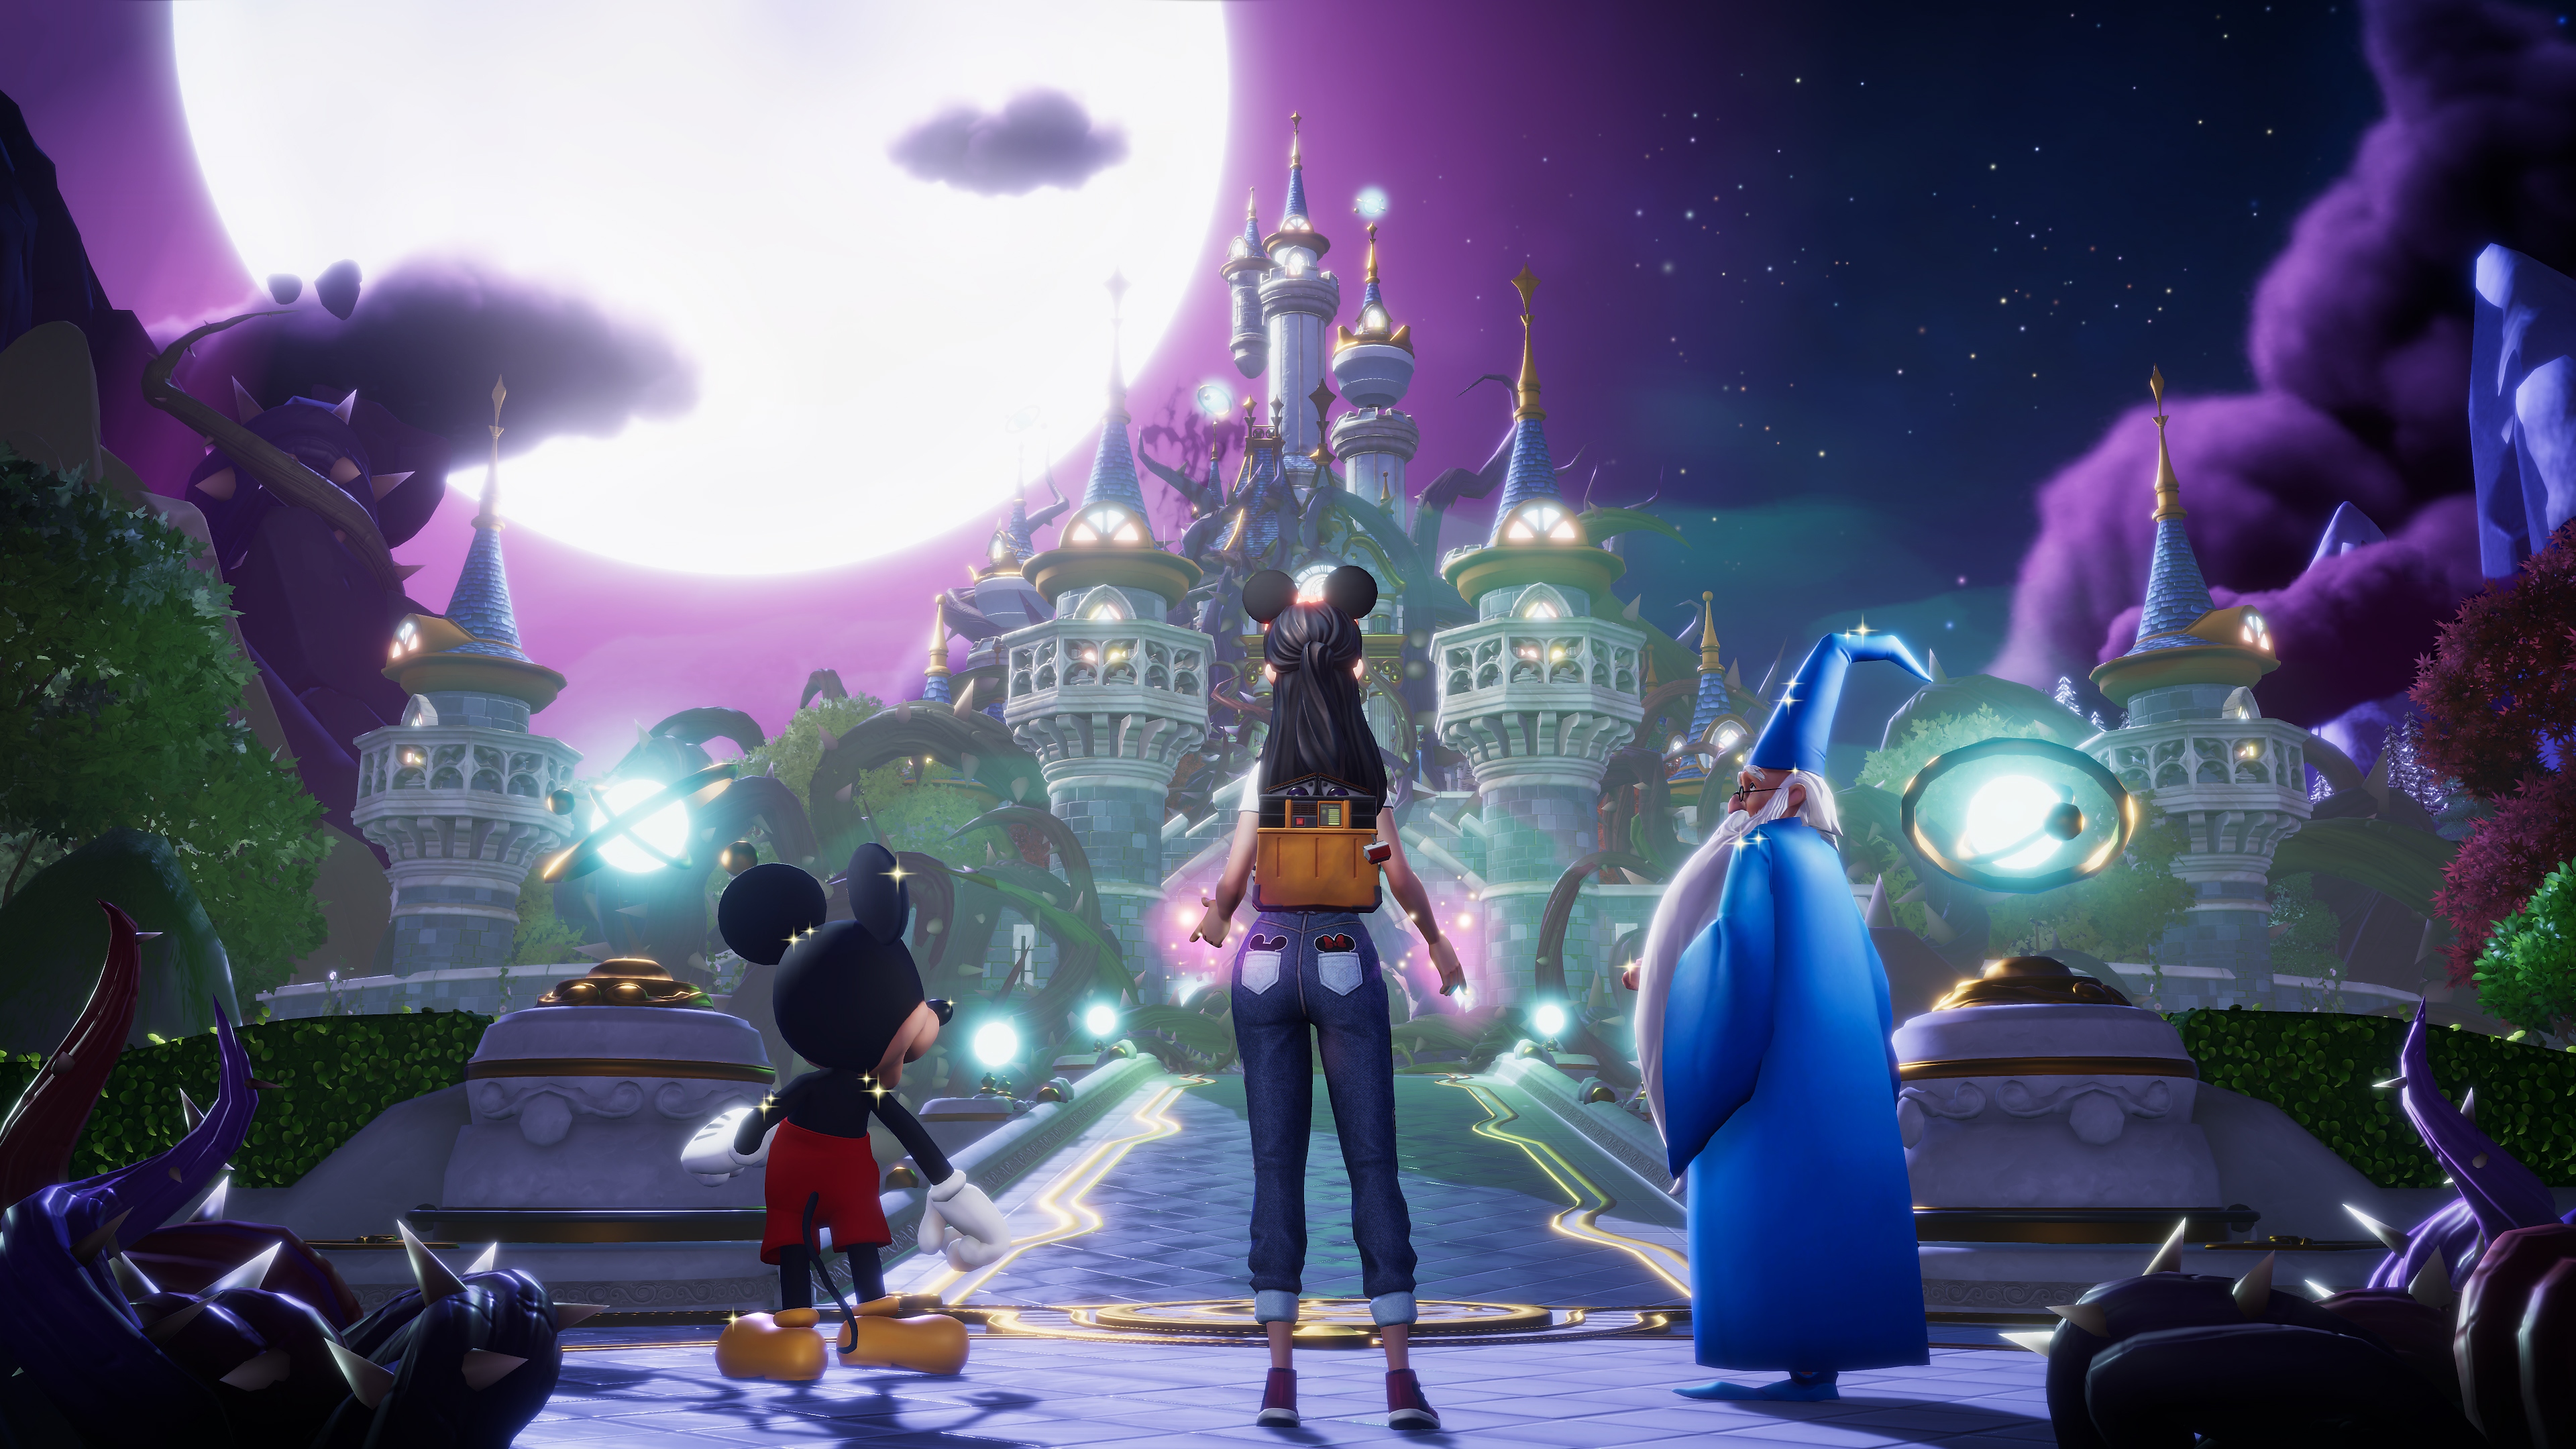 لقطة شاشة للعبة Disney Dreamlight Valley تعرض ميكي ماوس وميرلين وصورة رمزية للاعب ينظرون تجاه قلعة تحت قمر مكتمل كبير الحجم